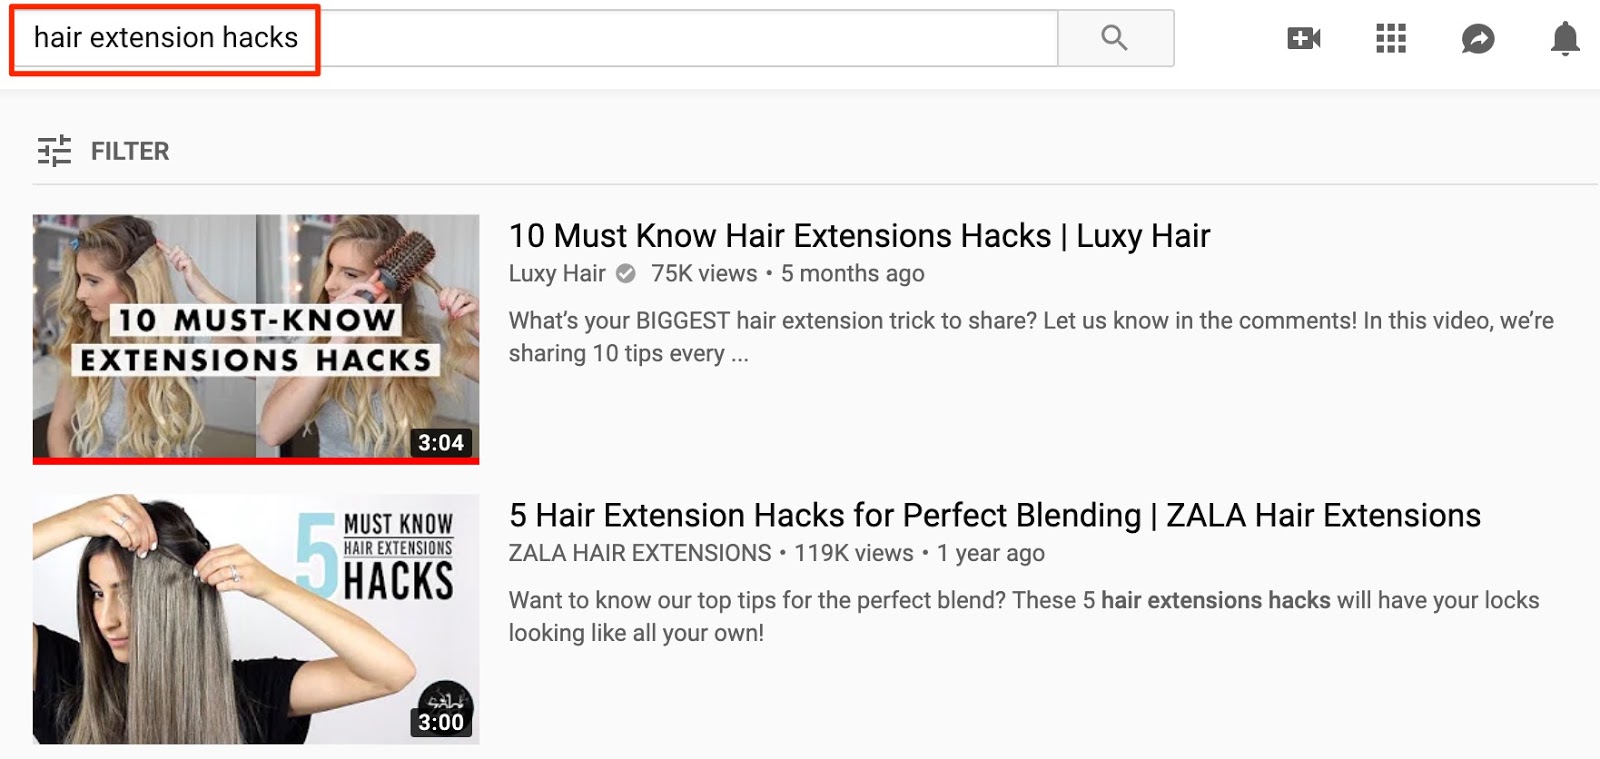 extension de cheveux hacks YouTube "srcset =" https://ahrefs.com/blog/wp-content/uploads/2019/10/hair_extension_hacks_-_YouTube.jpg 1600w, https://ahrefs.com/blog/wp-content/uploads /2019/10/hair_extension_hacks_-_YouTube-768x364.jpg 768w, https://ahrefs.com/blog/wp-content/uploads/2019/10/hair_extension_hacks_-_YouTube-680x323.jpg 680w "tailles =" (max-width : 1600px) 100vw, 1600px